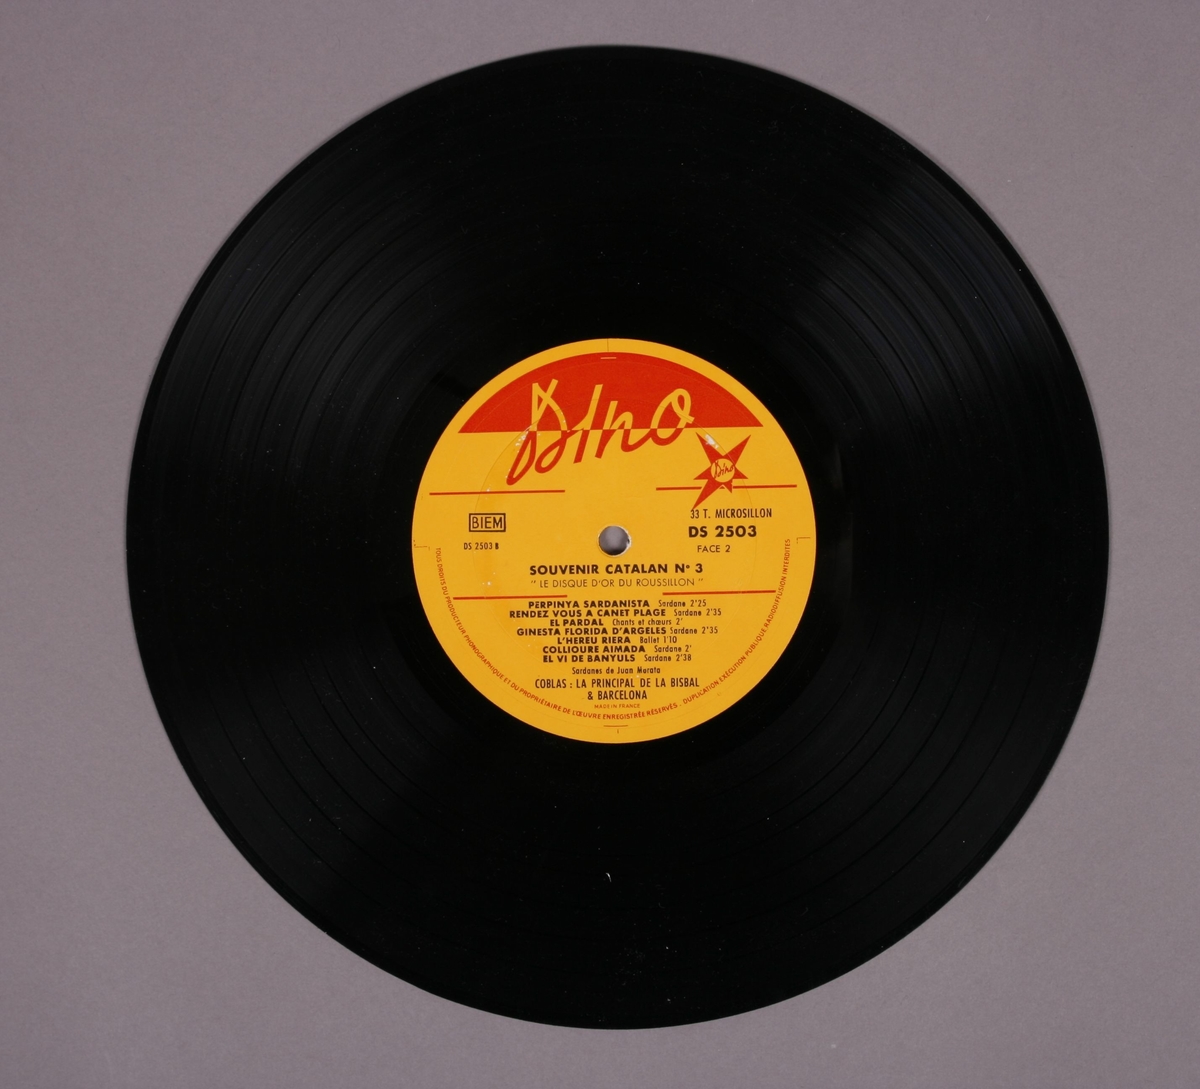 Grammofonplate i svart vinyl med plateomslag. Plateomslag er kombinert med hefte (se bilde).